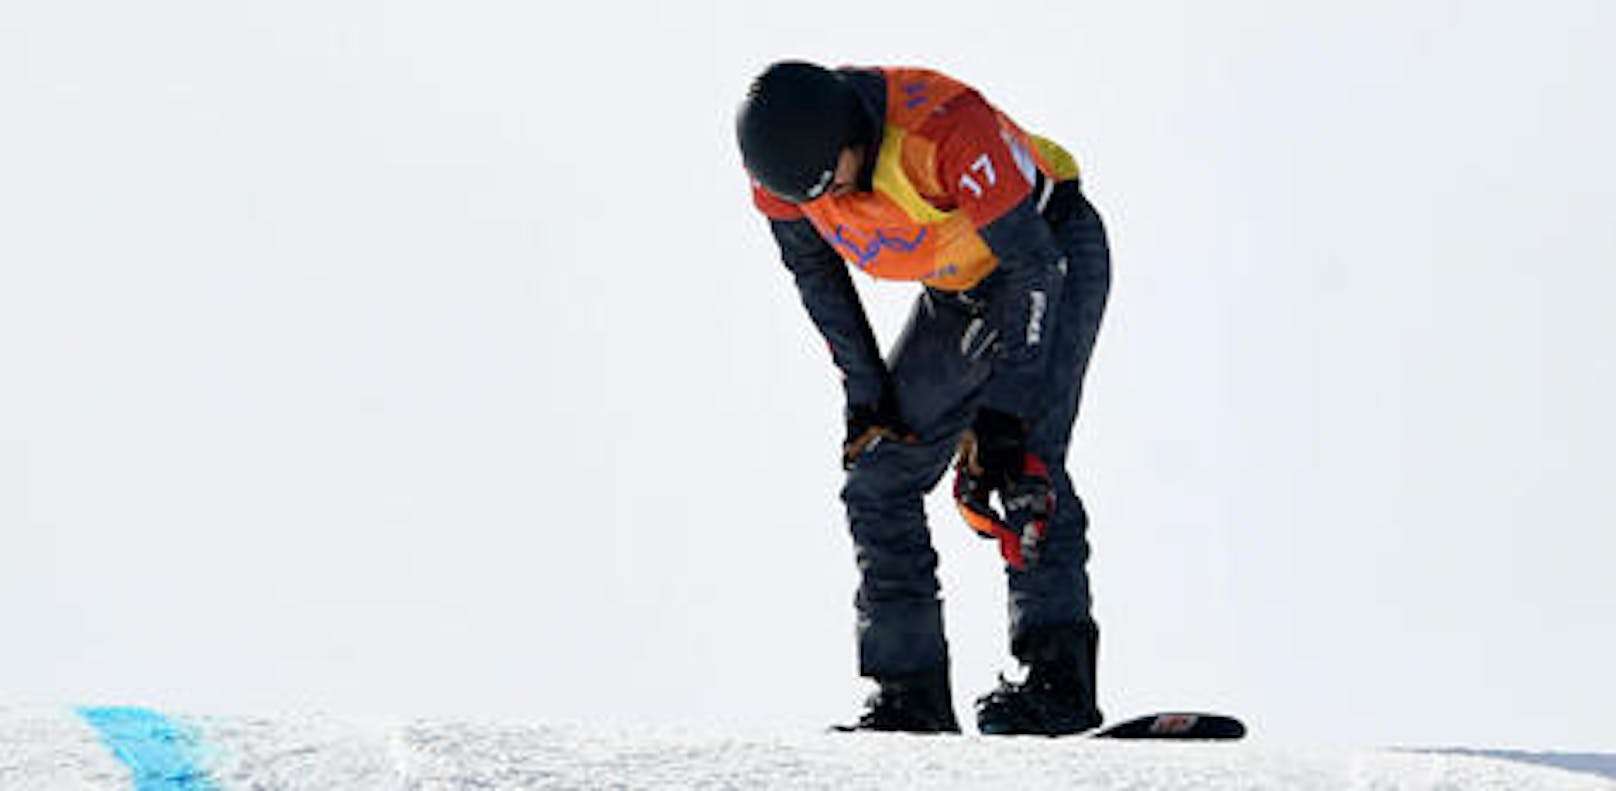 Österreich zitterte mit Markus Schairer! Der Vorarlberger stürzte beim Snowboardcross-Bewerb in Pyeongchang schwer, brach sich einen Halswirbel.